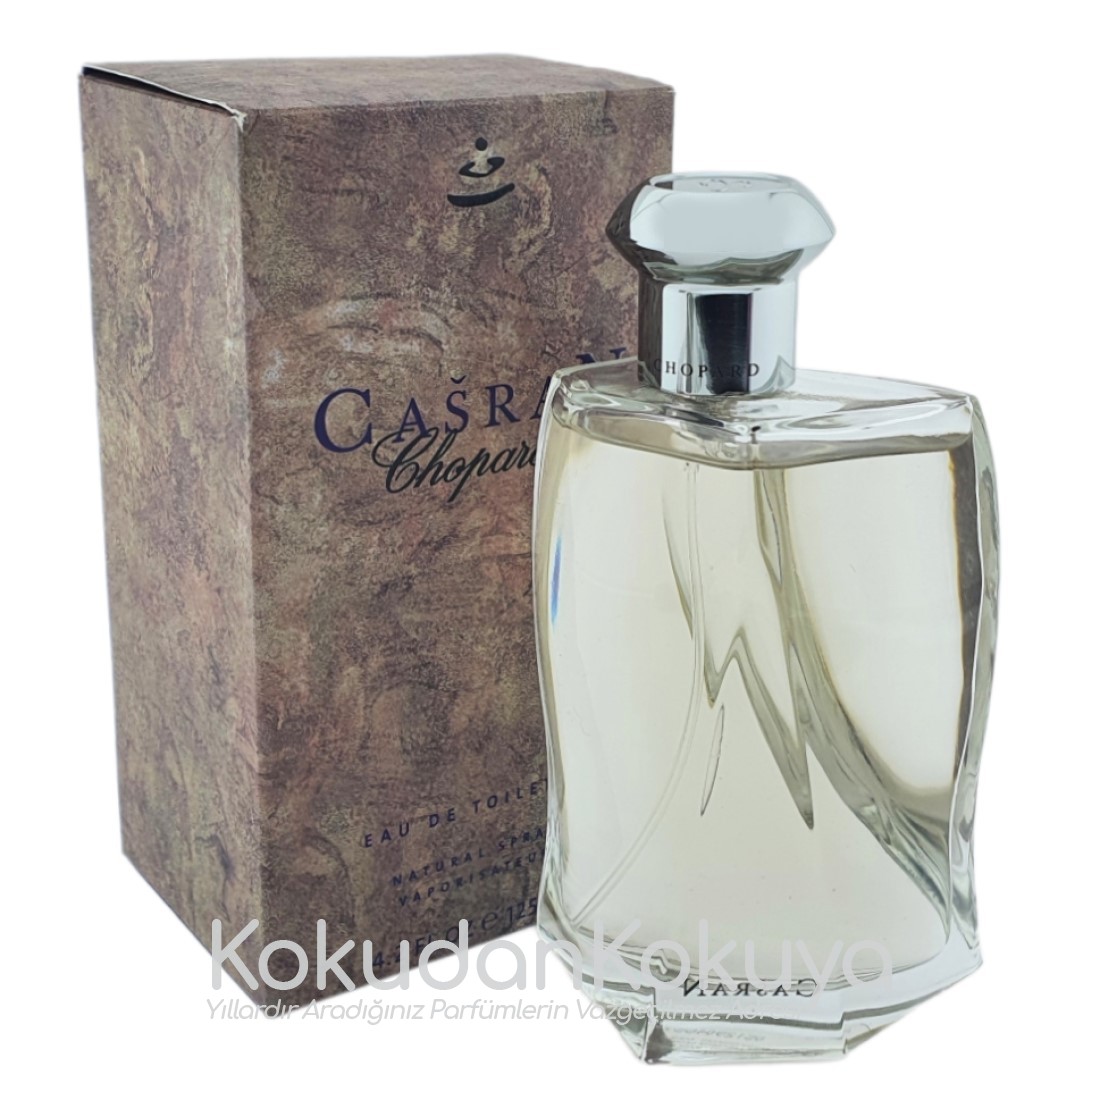 CHOPARD Casran for Men (Vintage) Parfüm Erkek 125ml Eau De Toilette (EDT) Sprey 